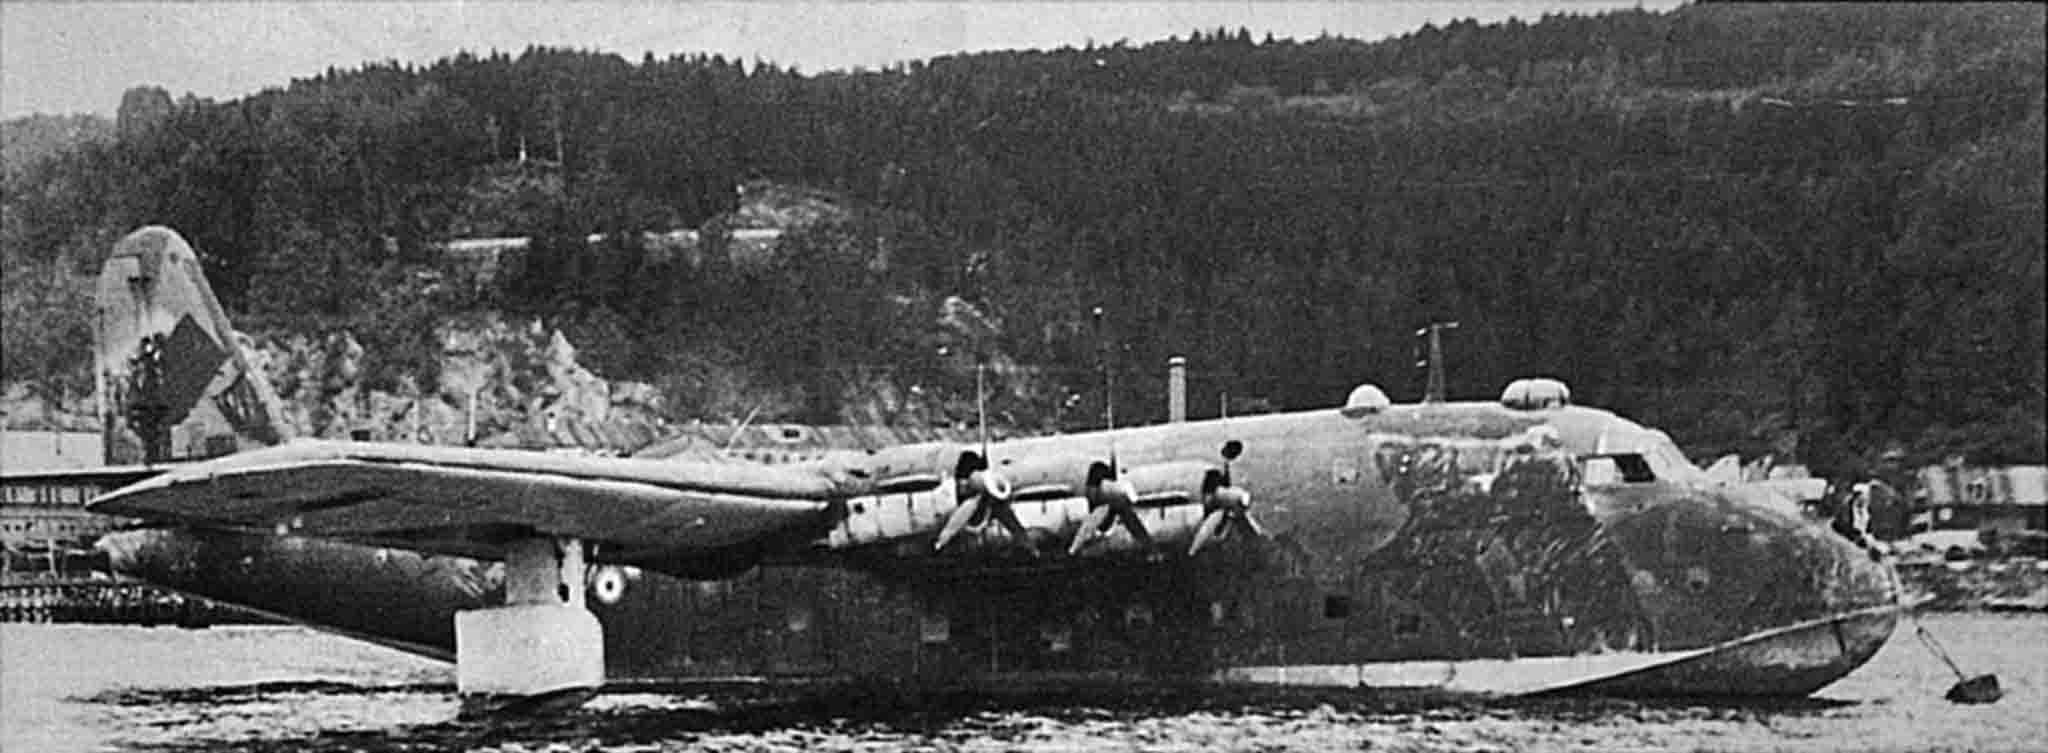 Bv-222 V-2 Viking